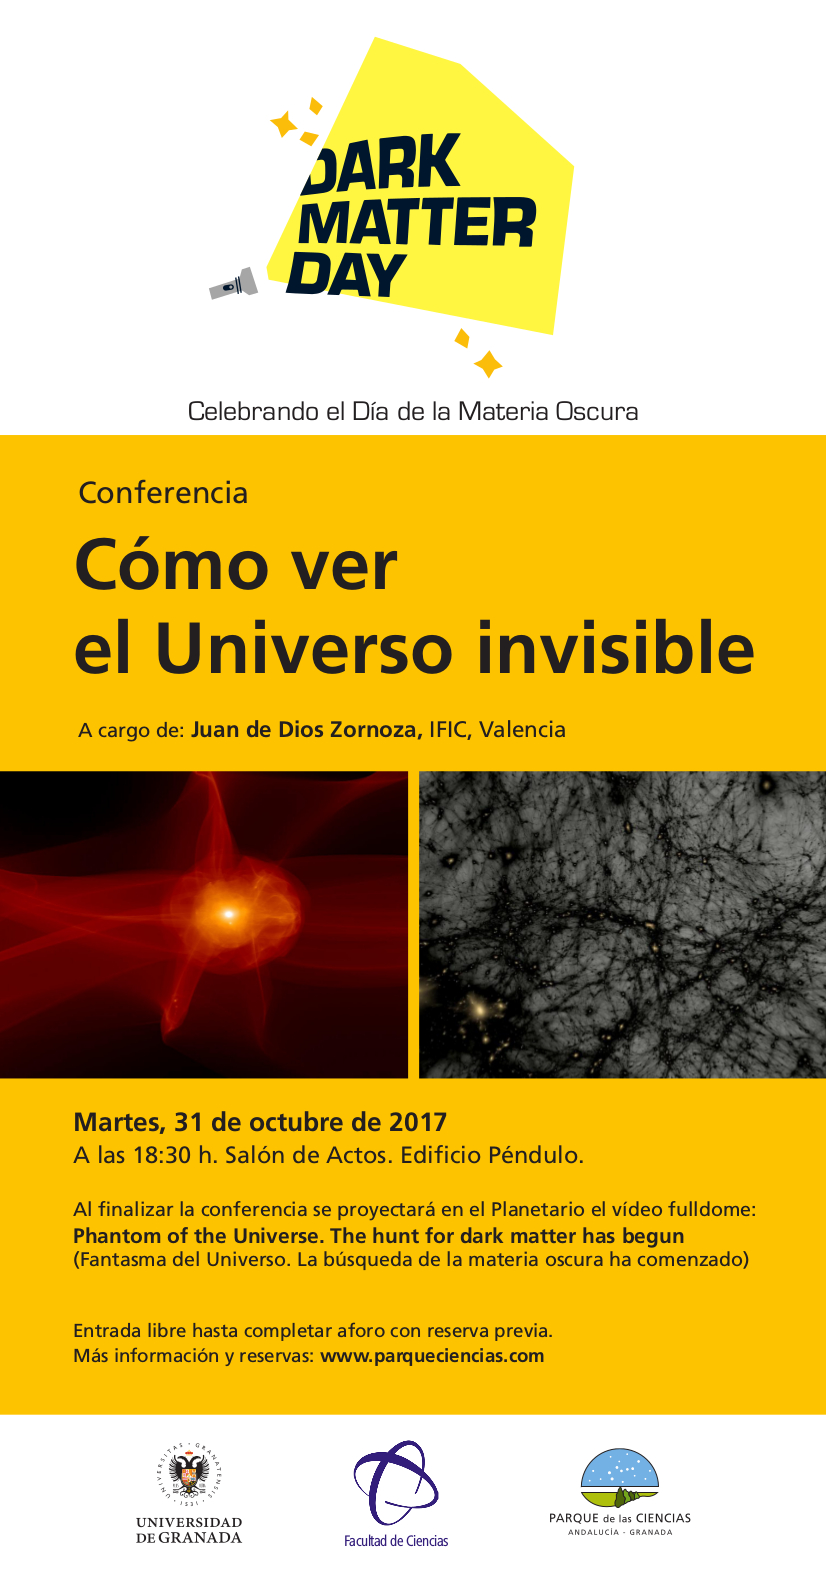 Día de la Materia Oscura en El Parque de las Ciencias: conferencia "Cómo ver el Universo invisible" y proyección de documental en Planetario